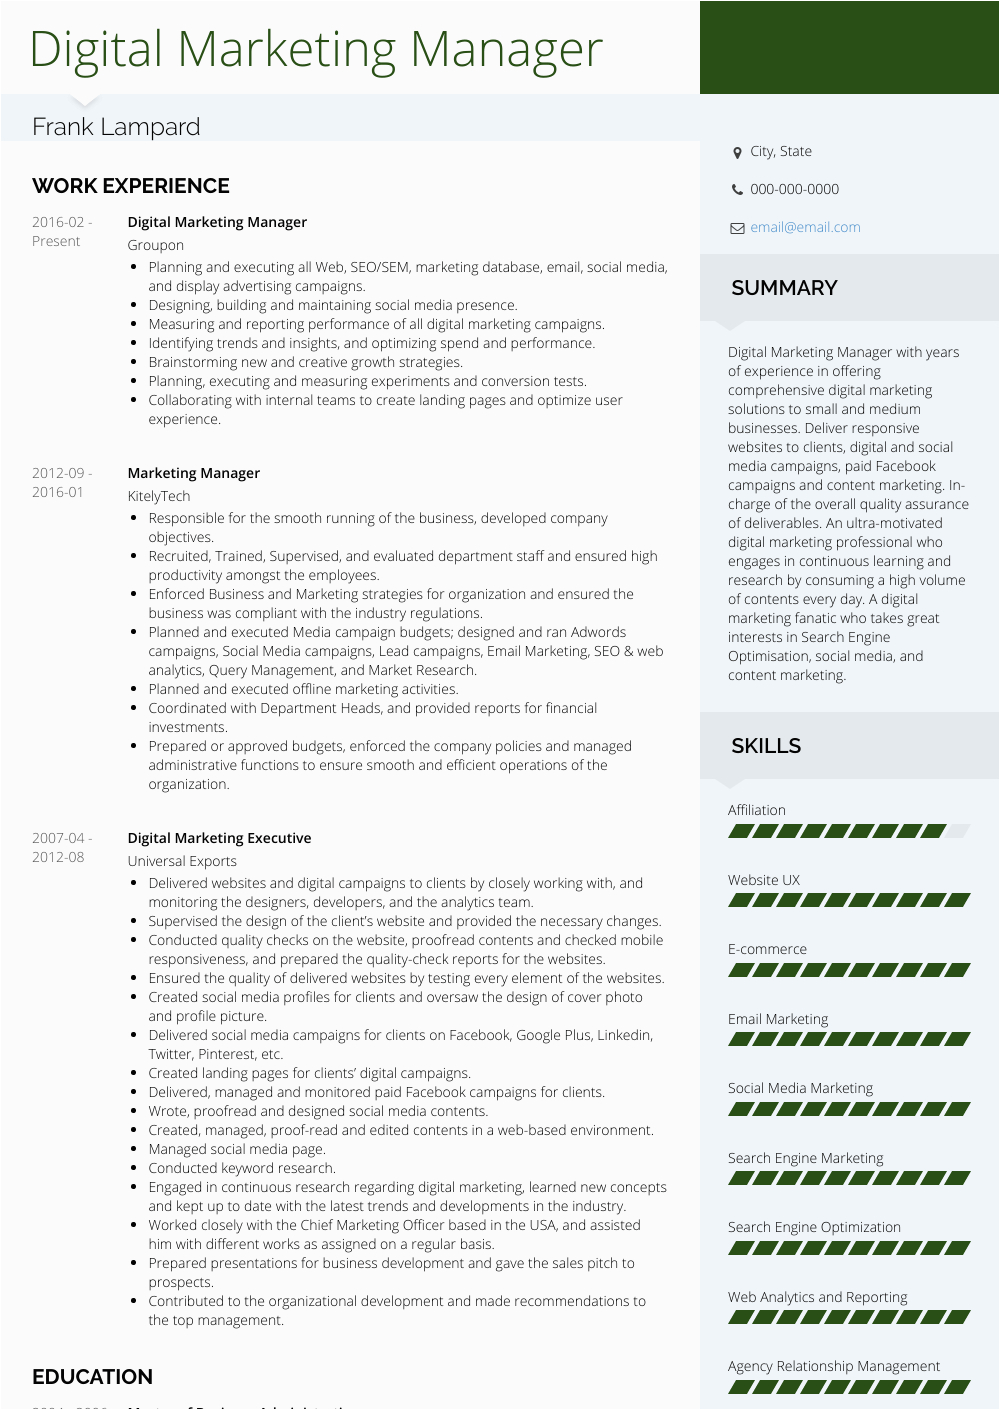 Sample Resume Of Digital Marketing Manager Digital Marketing Manager Resume Samples and Templates